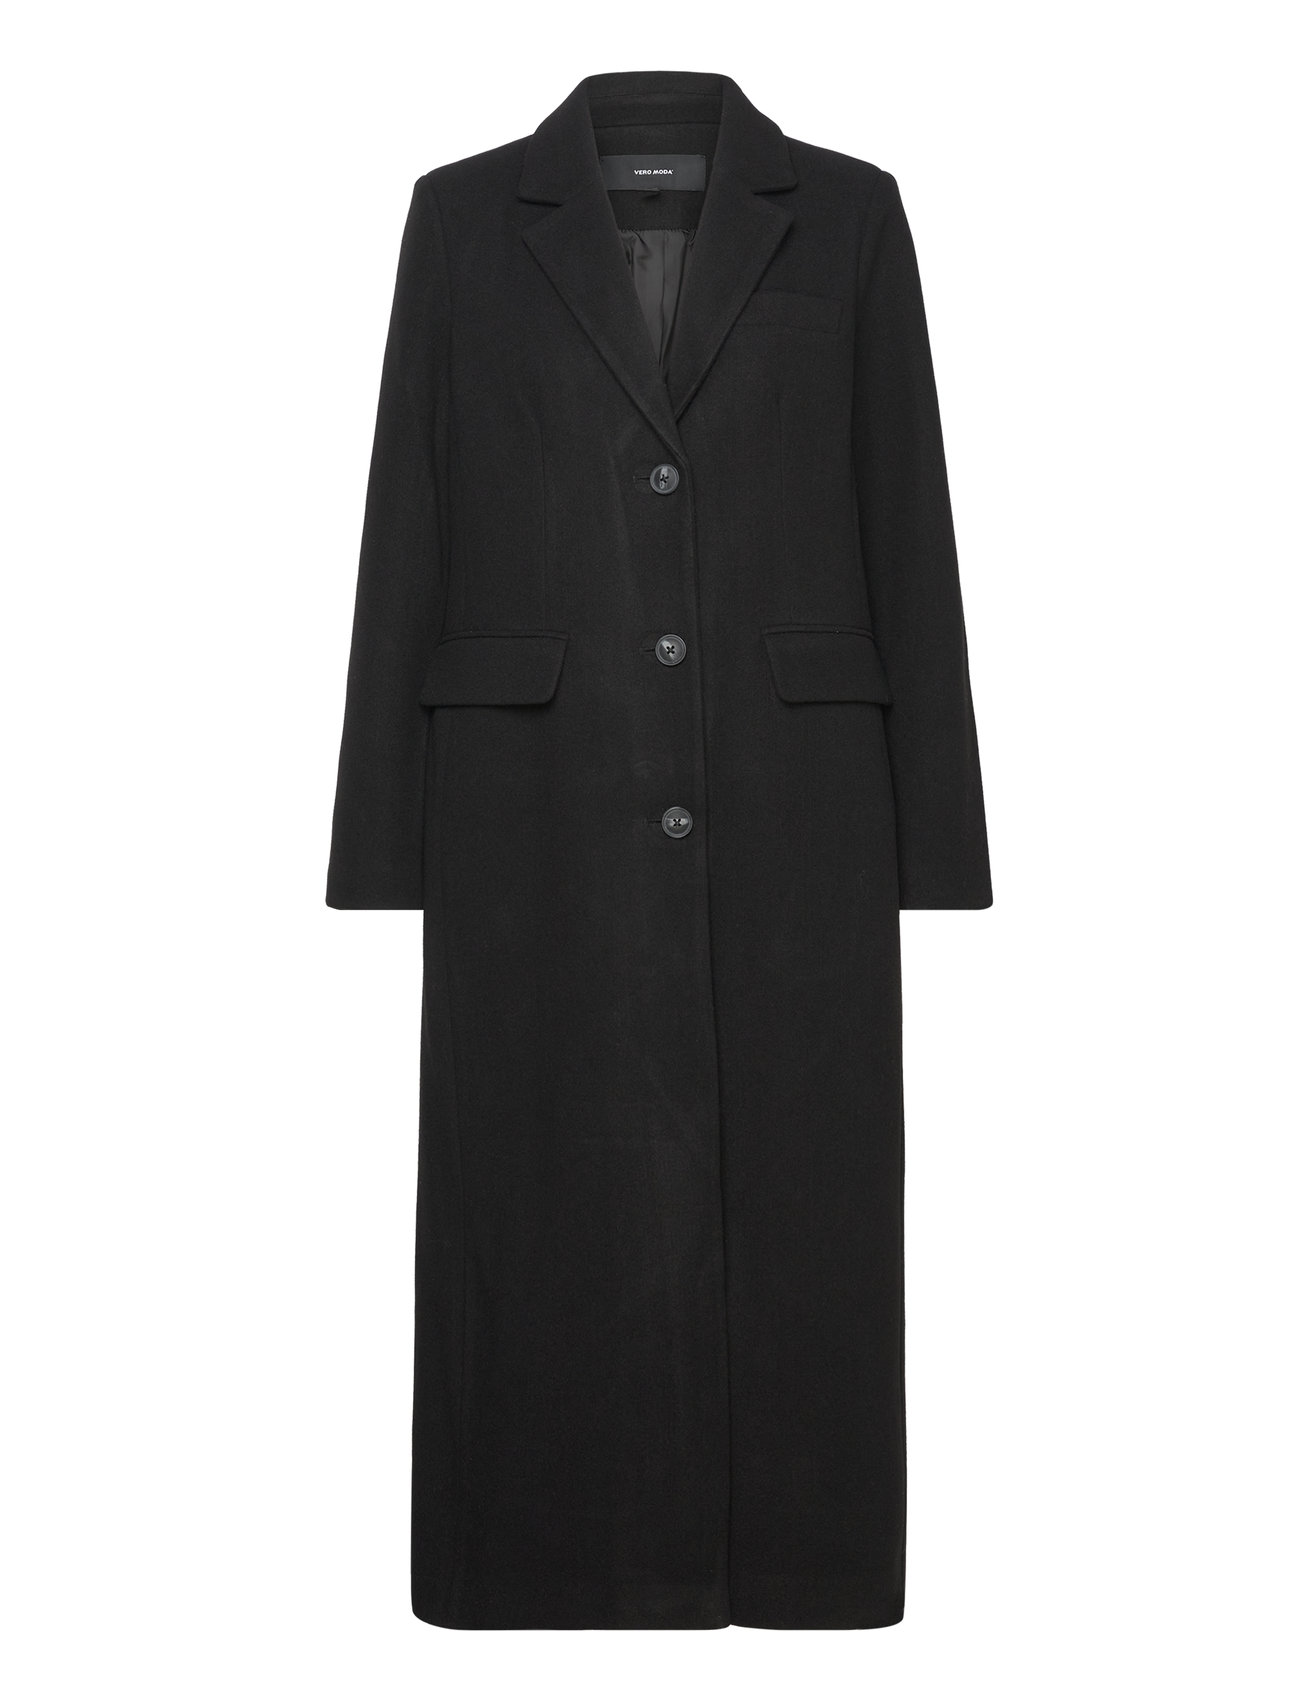 Vero Moda Vmvincemilan Long Coat Boos Cp - 59.99 €. Buy Winter Coats ...